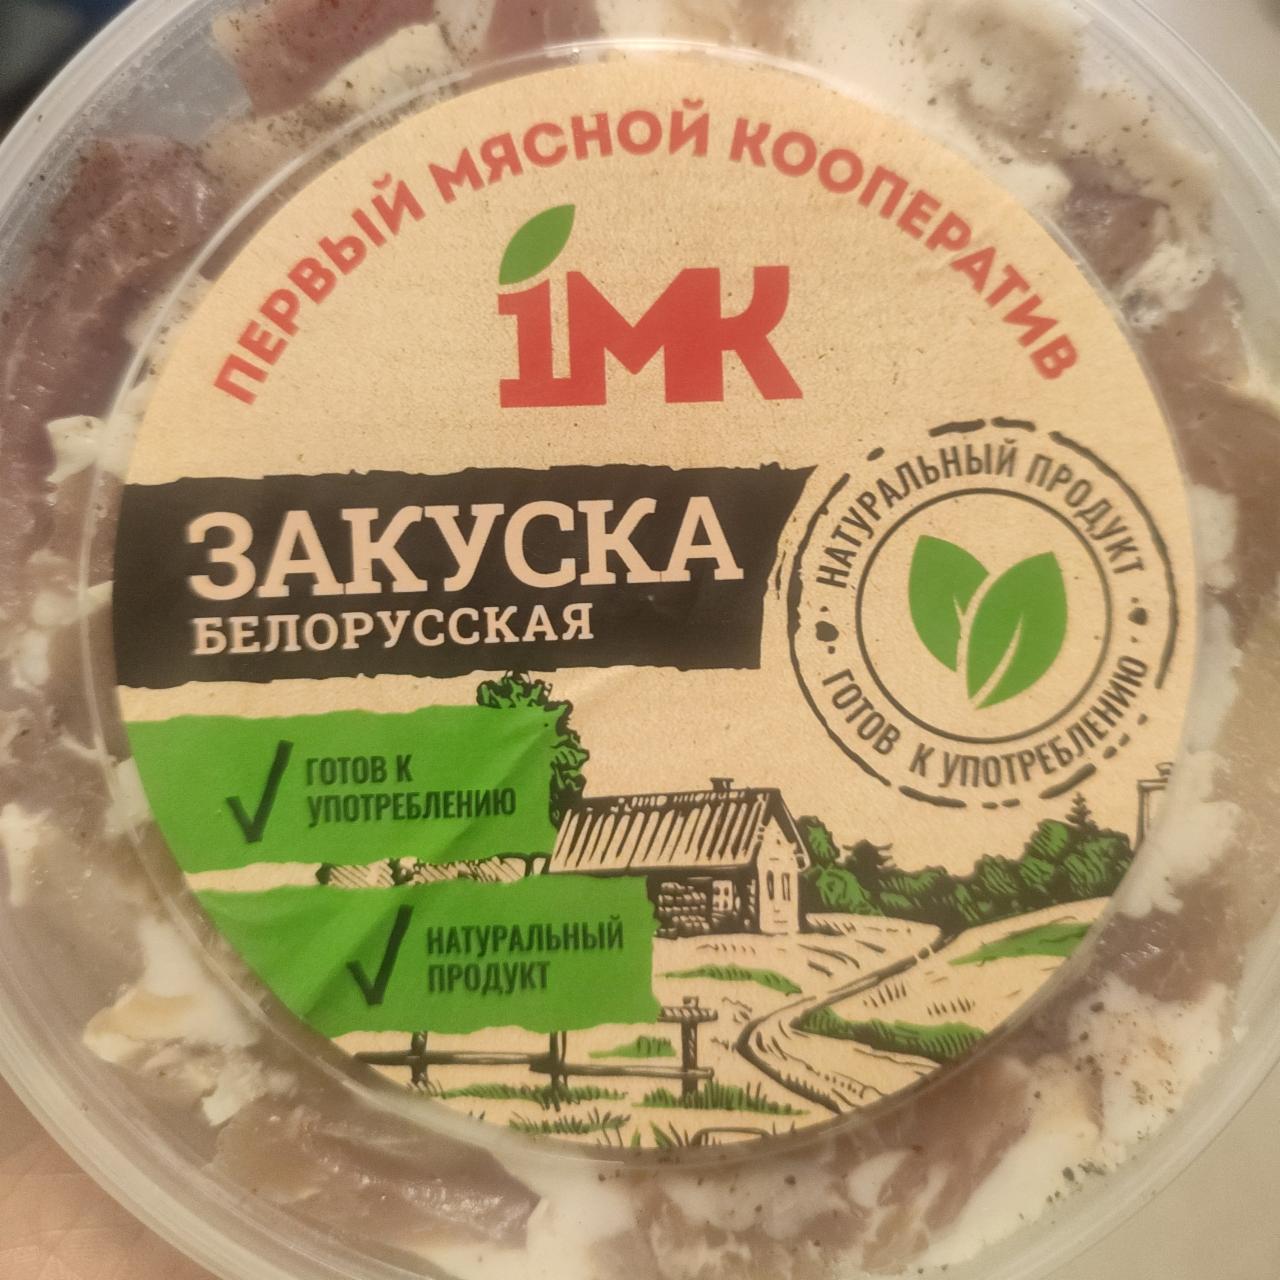 Фото - закуска белорусская 1МК